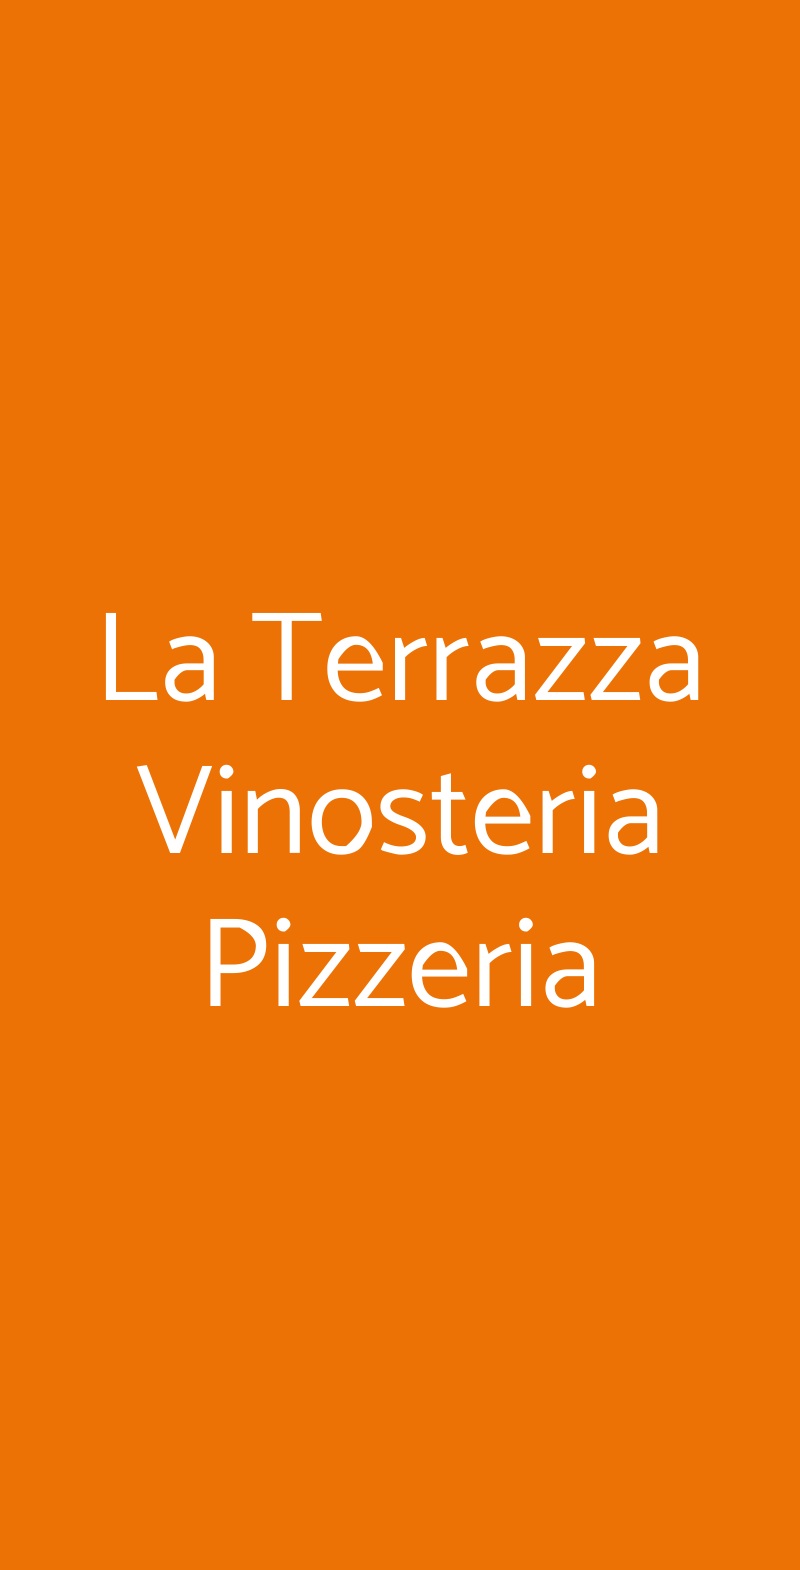 La Terrazza Vinosteria Pizzeria Brindisi menù 1 pagina